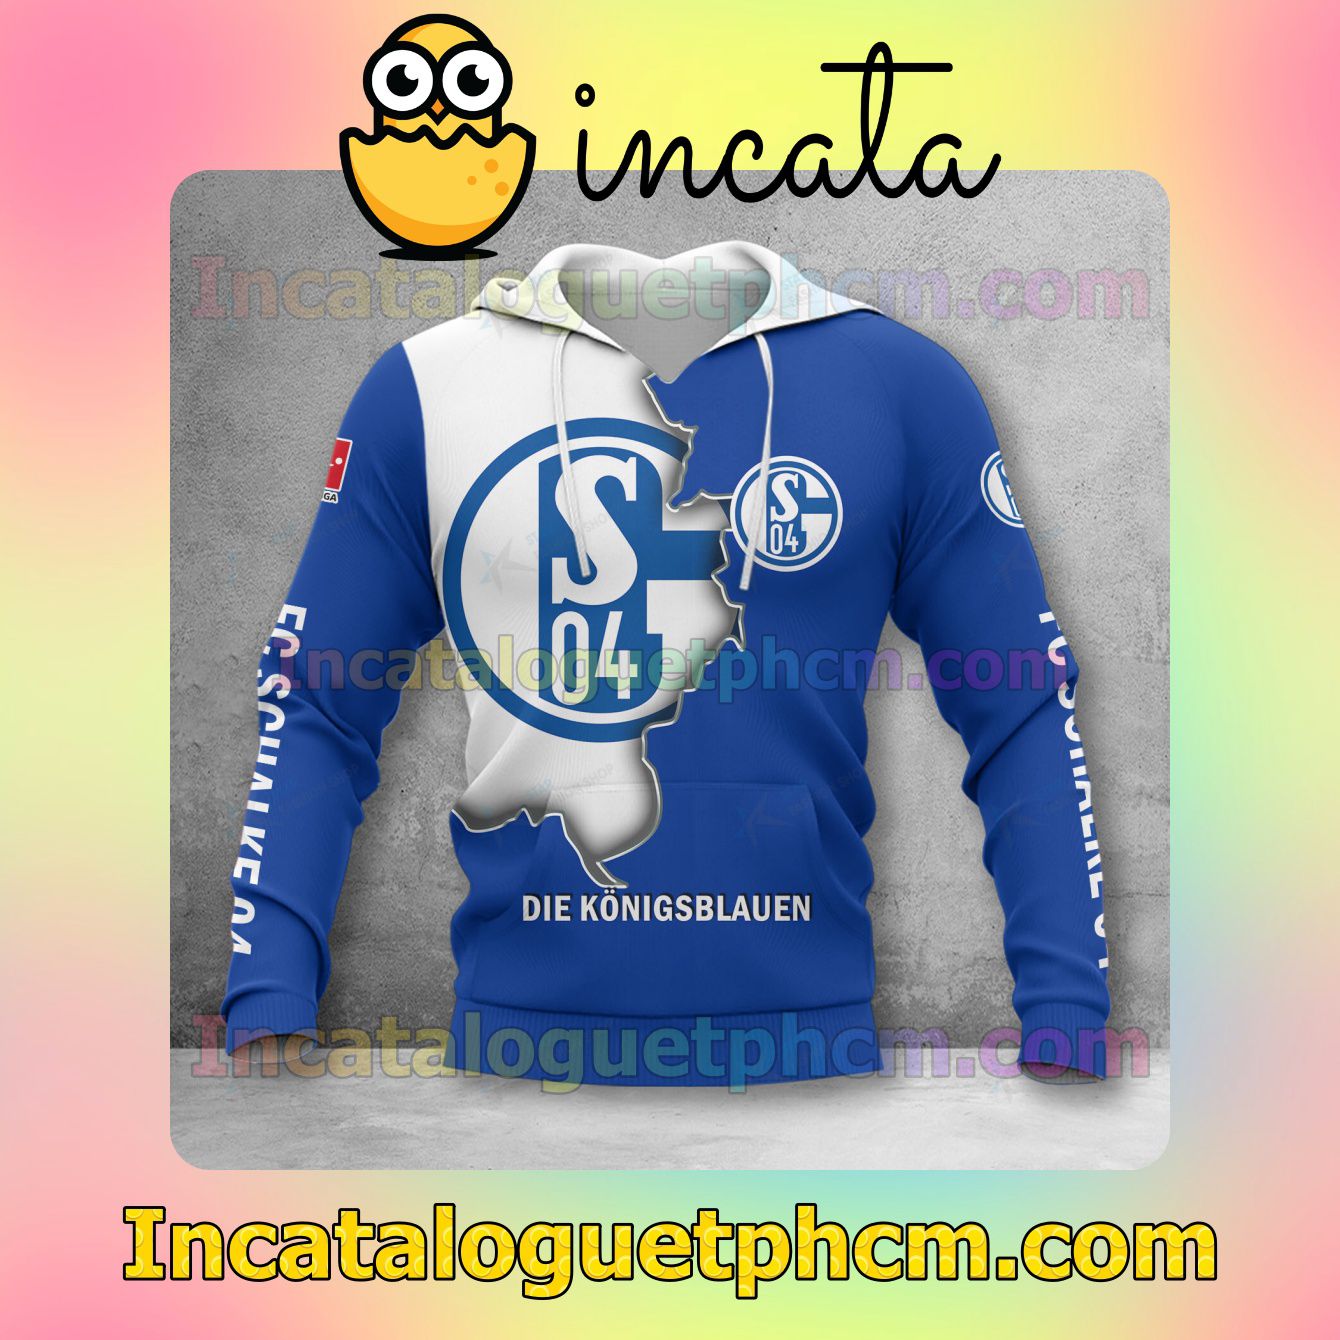 Official Schalke 04 3D Hoodie, Hawaiian Shirt